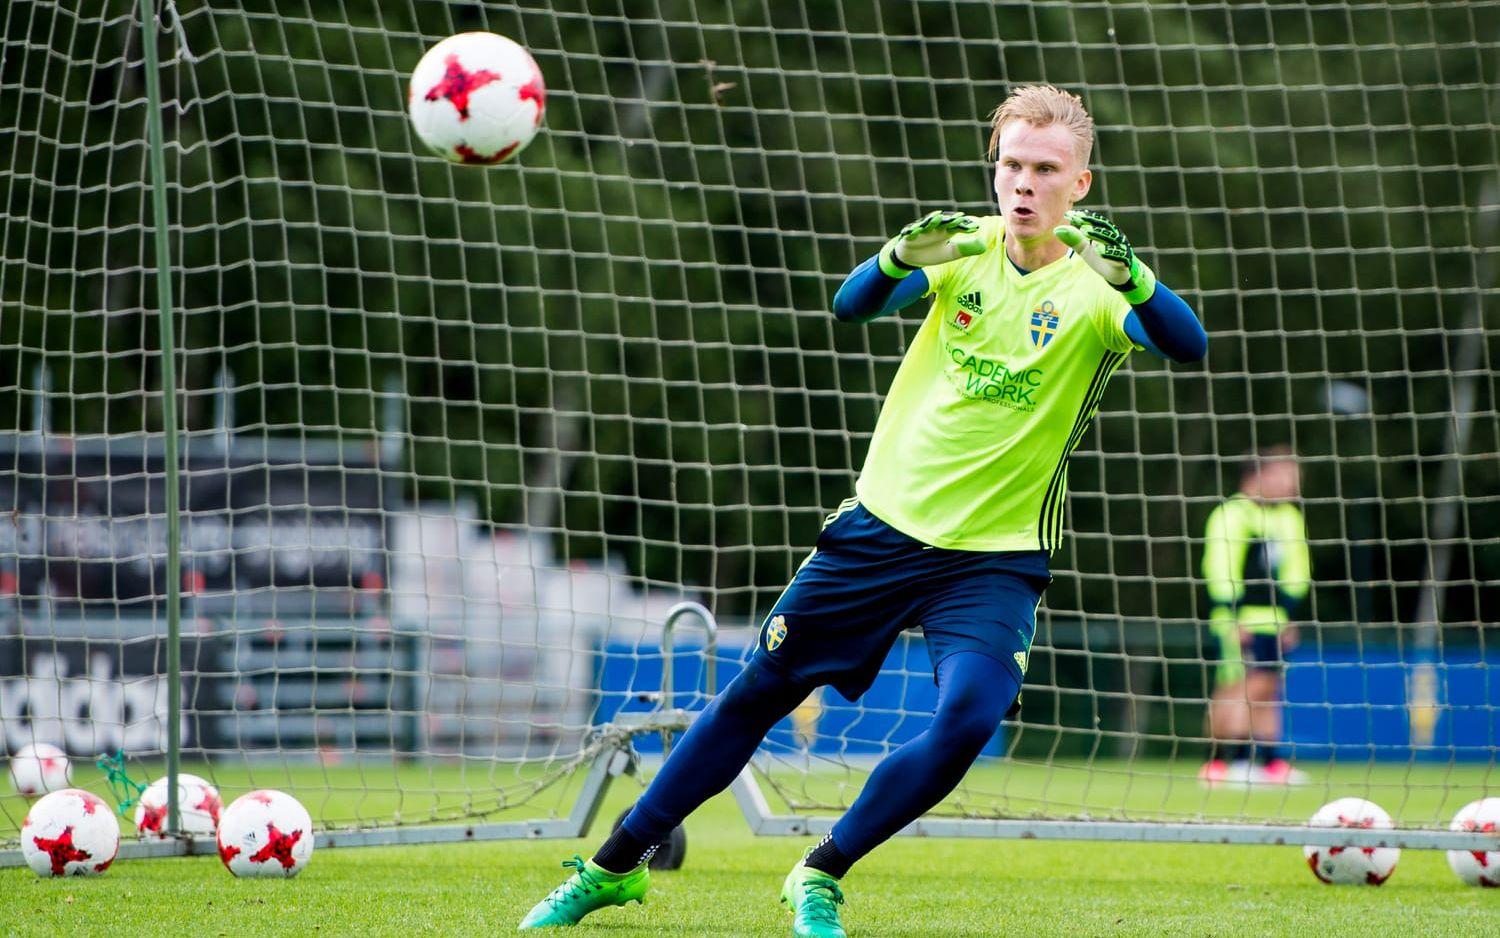 Dahlberg var med som en av tre målvakter i U21-EM men fick inte spela när Sverige åkte ut i gruppspelet.. Foto: Bildbyrån